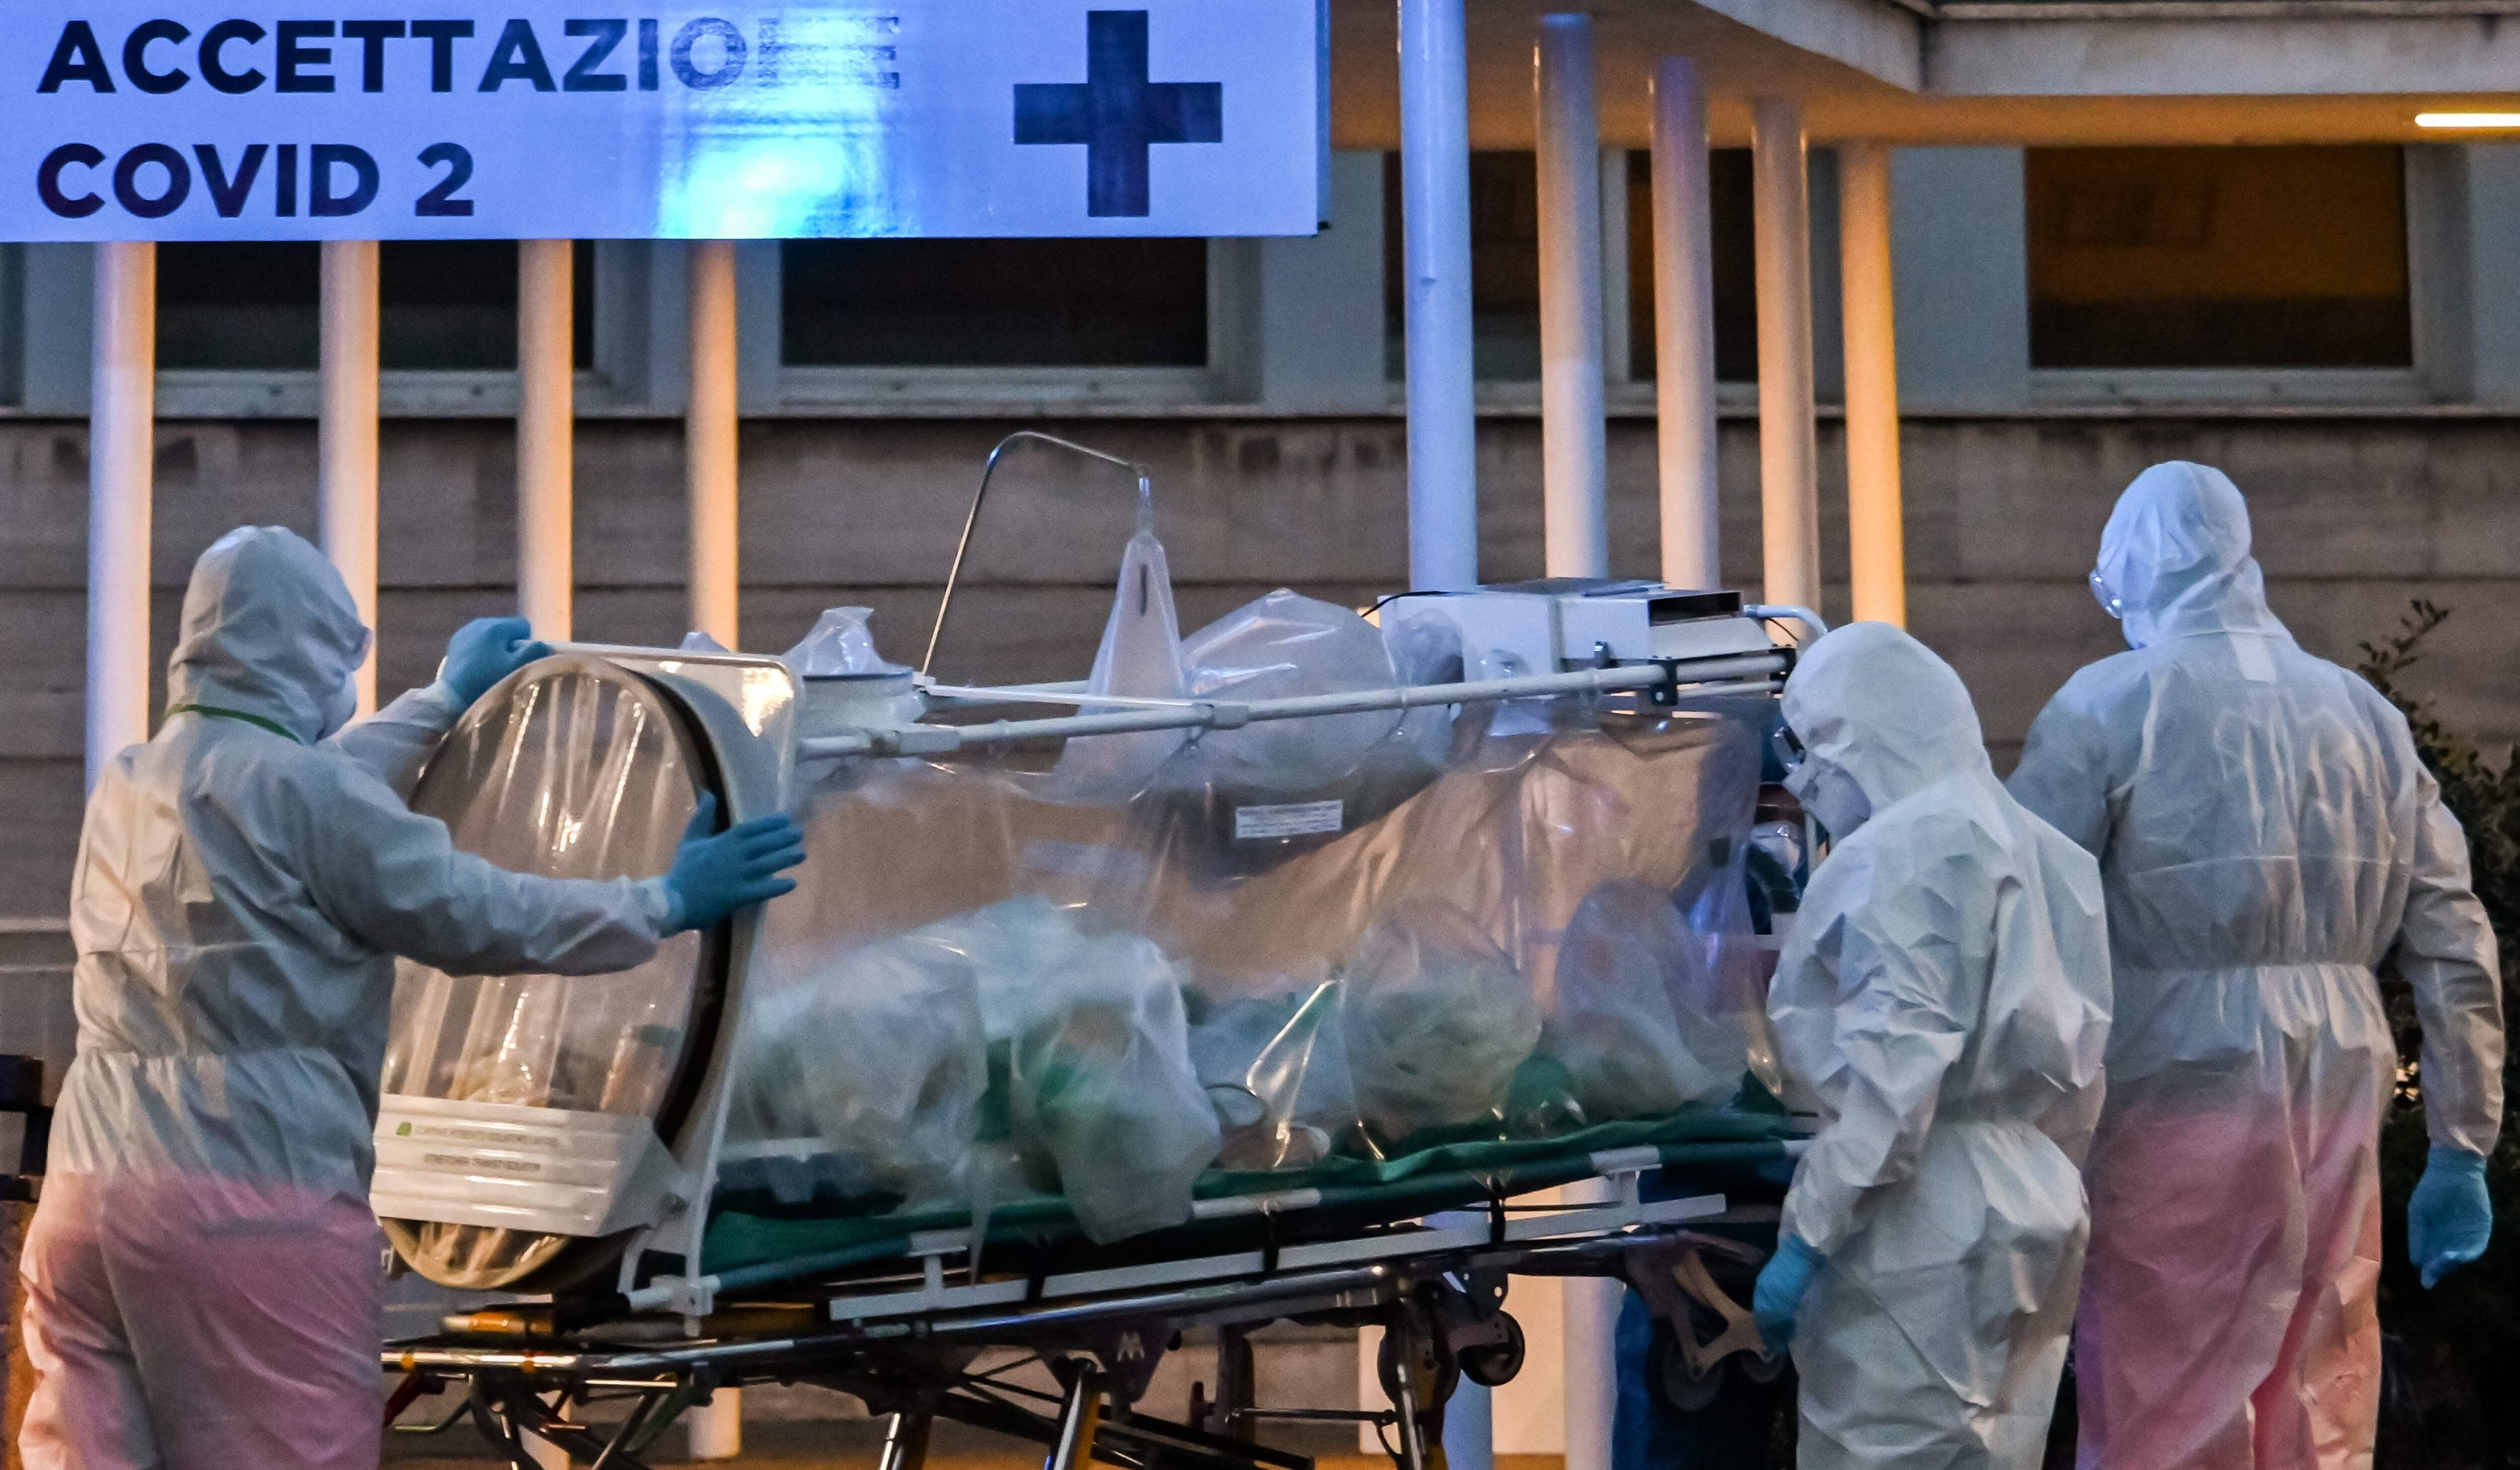 Médicos con trajes protectores para prevenir el coronavirus llevan a un paciente al hospital temporal Columbus Covid 2 en Italia. (AFP / ANDREAS SOLARO).